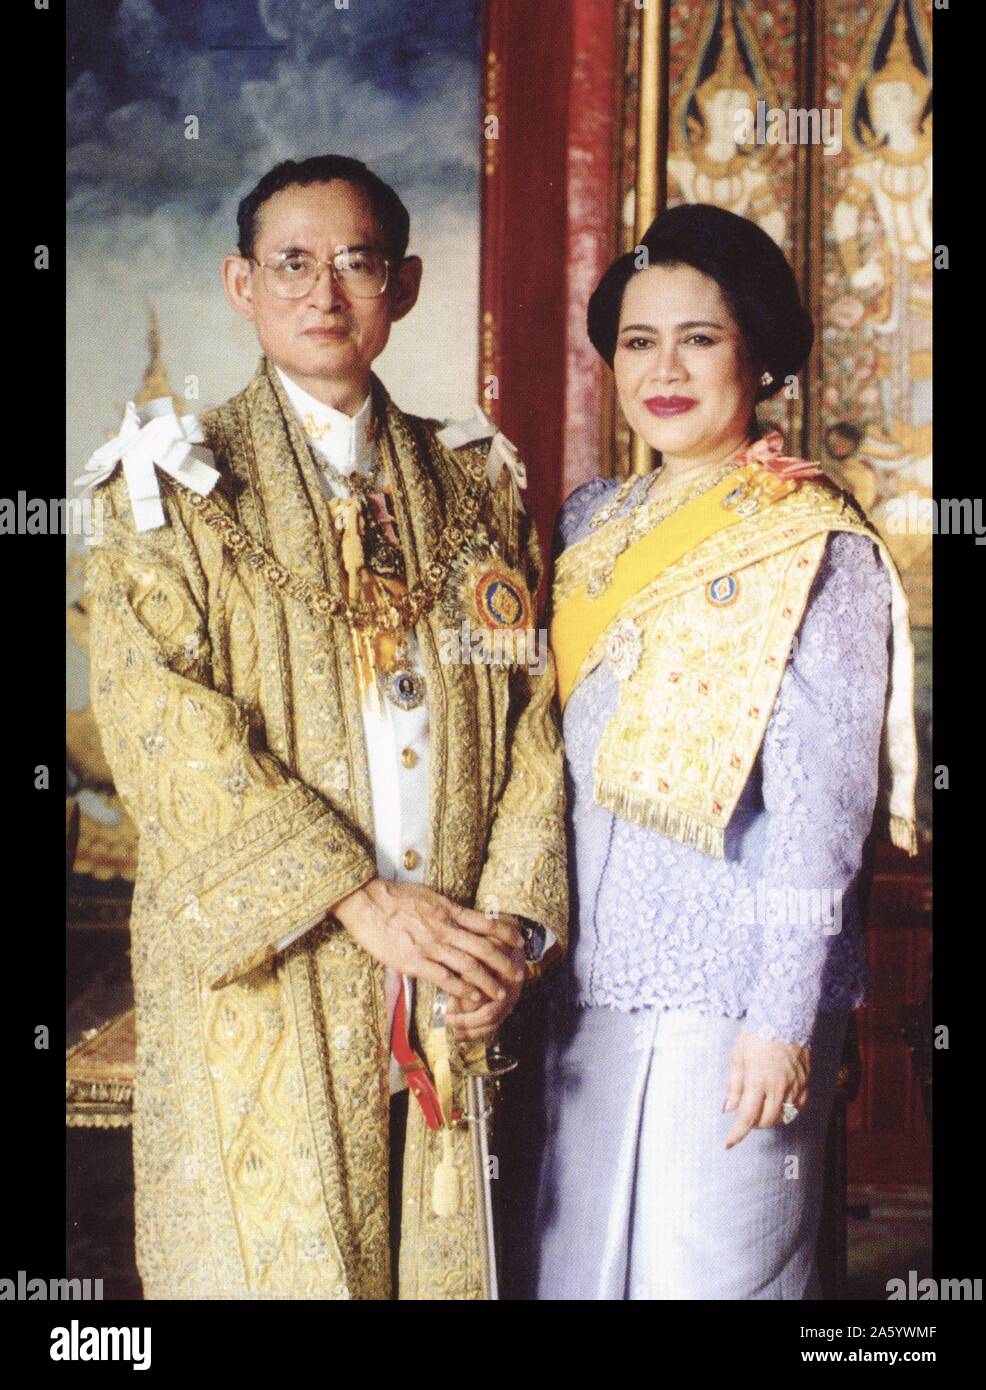 Bhumibol Adulyadej (nacido en 1927), el Rey de Tailandia. Él es también  conocido como Rama IX, como él es el noveno monarca de la dinastía Chakri.  Habiendo reinó desde el 9 de